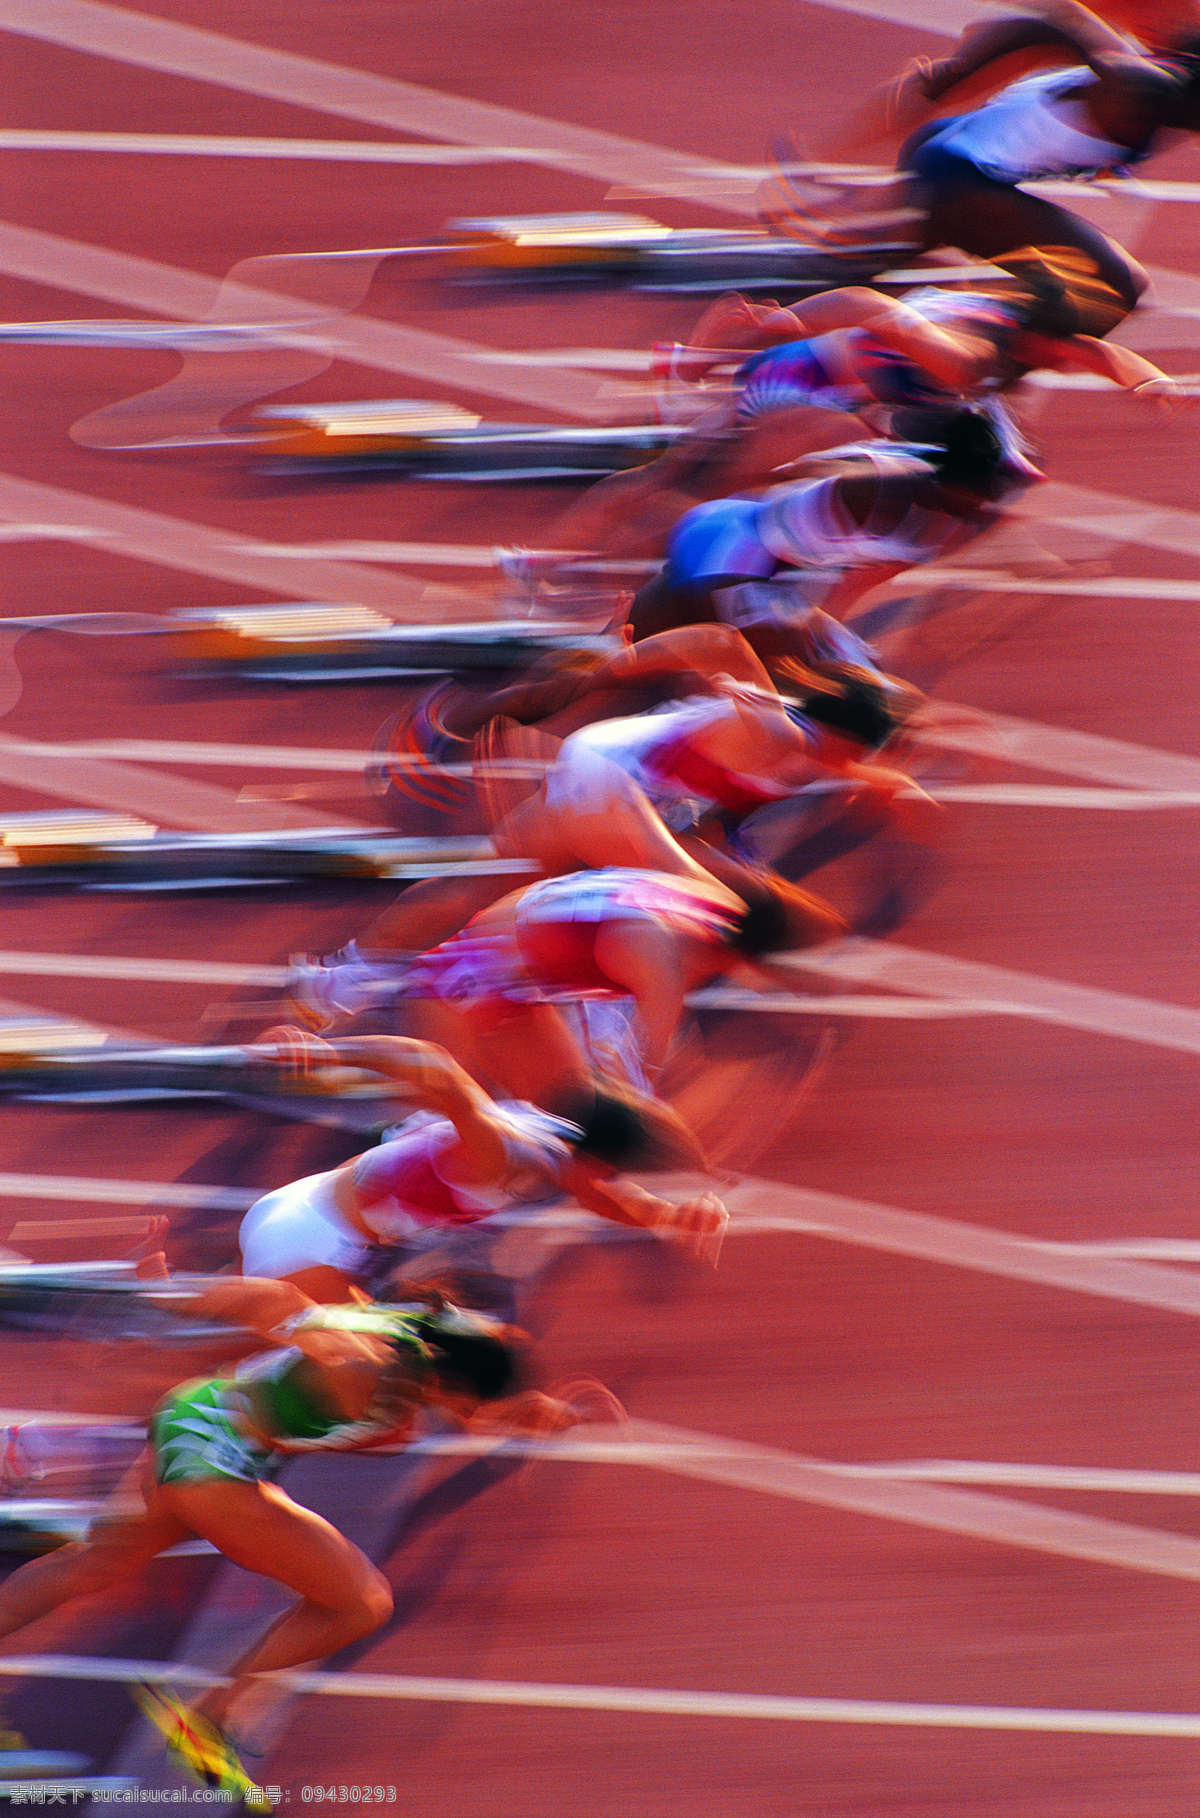 体育竞技 体育运动 比赛 竞争 赛跑 文化艺术